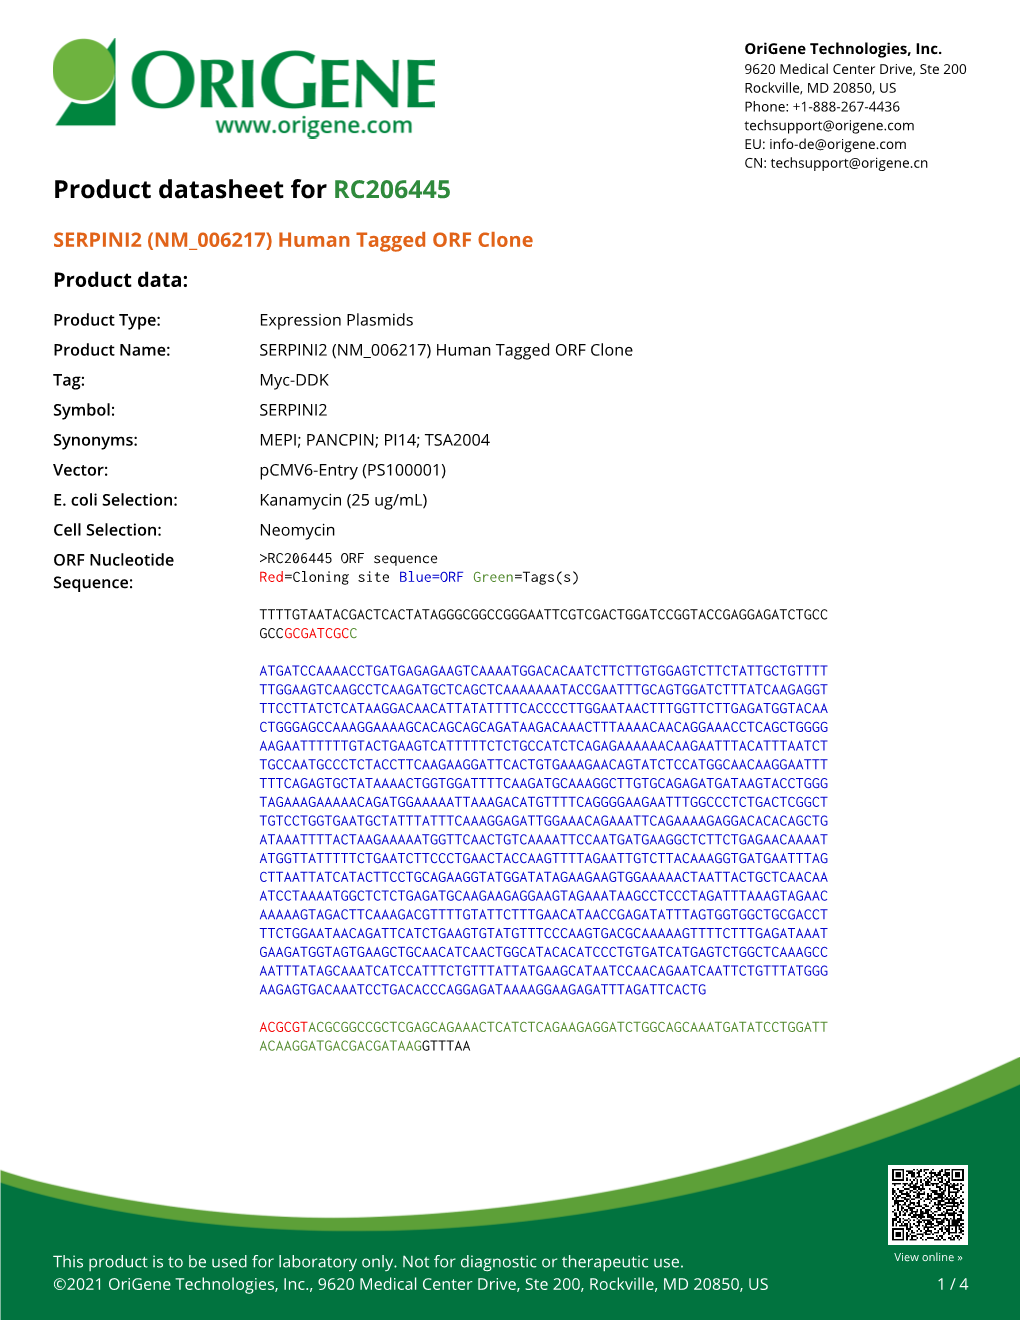 SERPINI2 (NM 006217) Human Tagged ORF Clone – RC206445